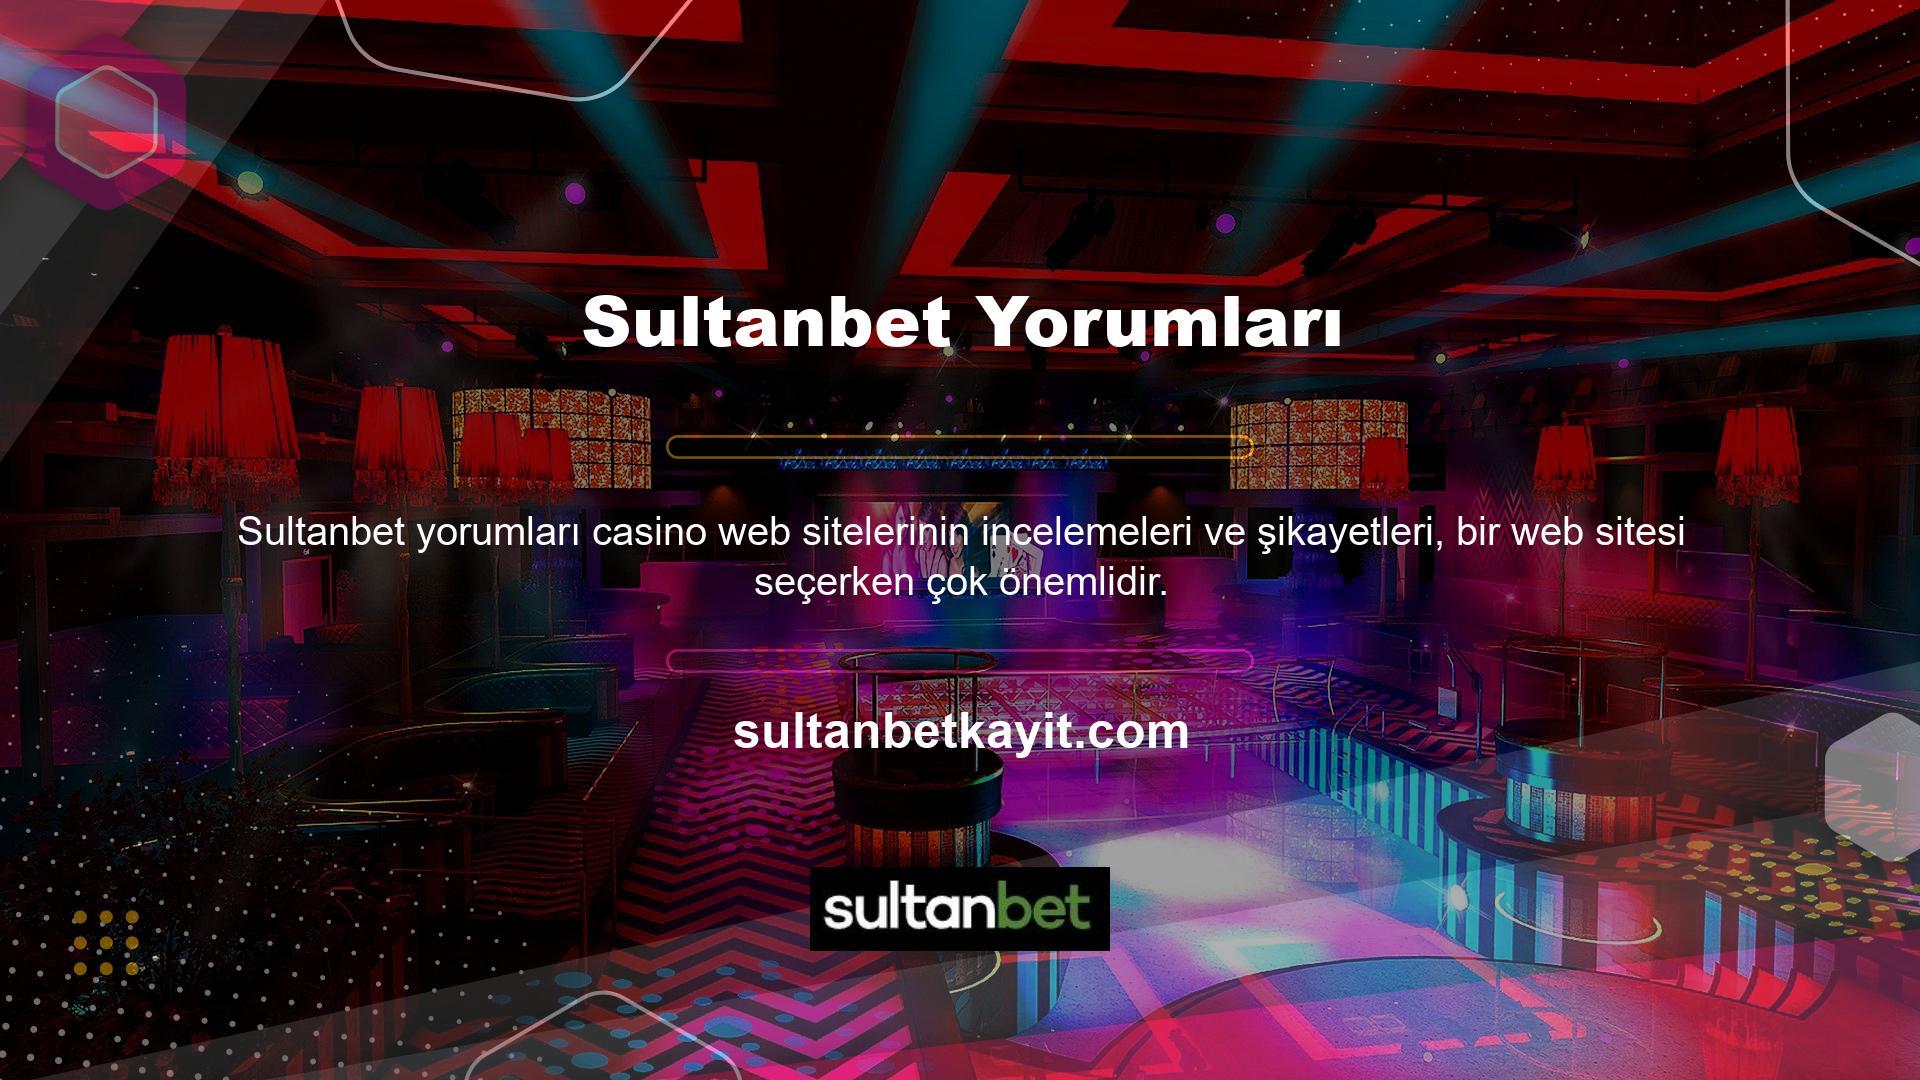 Casino tutkunları da web sitesi seçerken farklı platformlardaki bu incelemelere başvuruyor